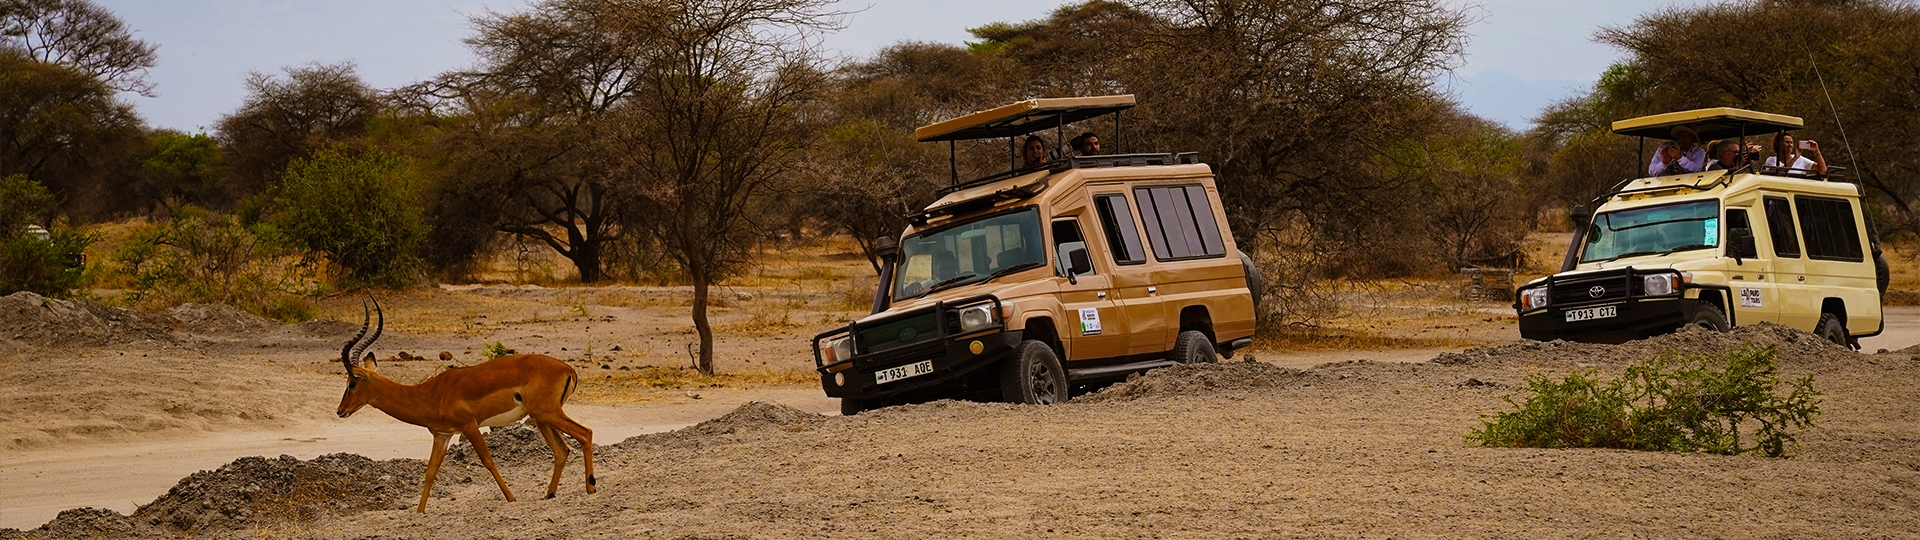 Wildlife Safari and Tours in Tanzania